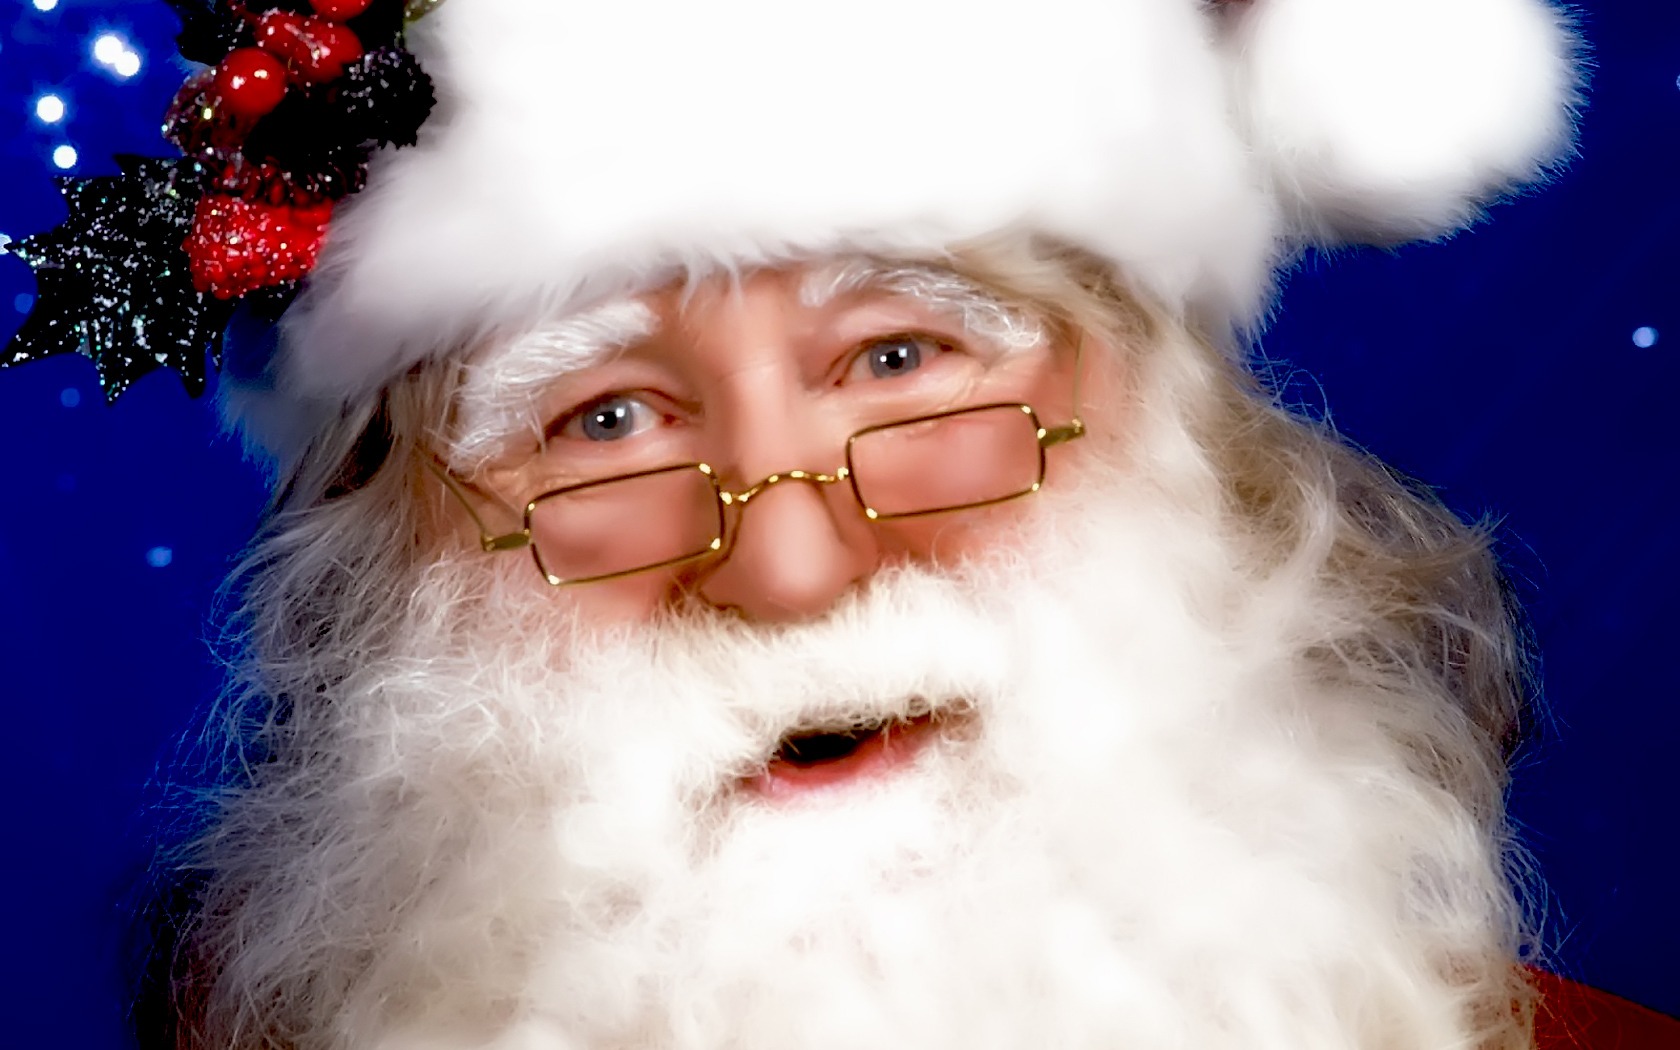 Daniel Dennett Santa Claus , HD Wallpaper & Backgrounds